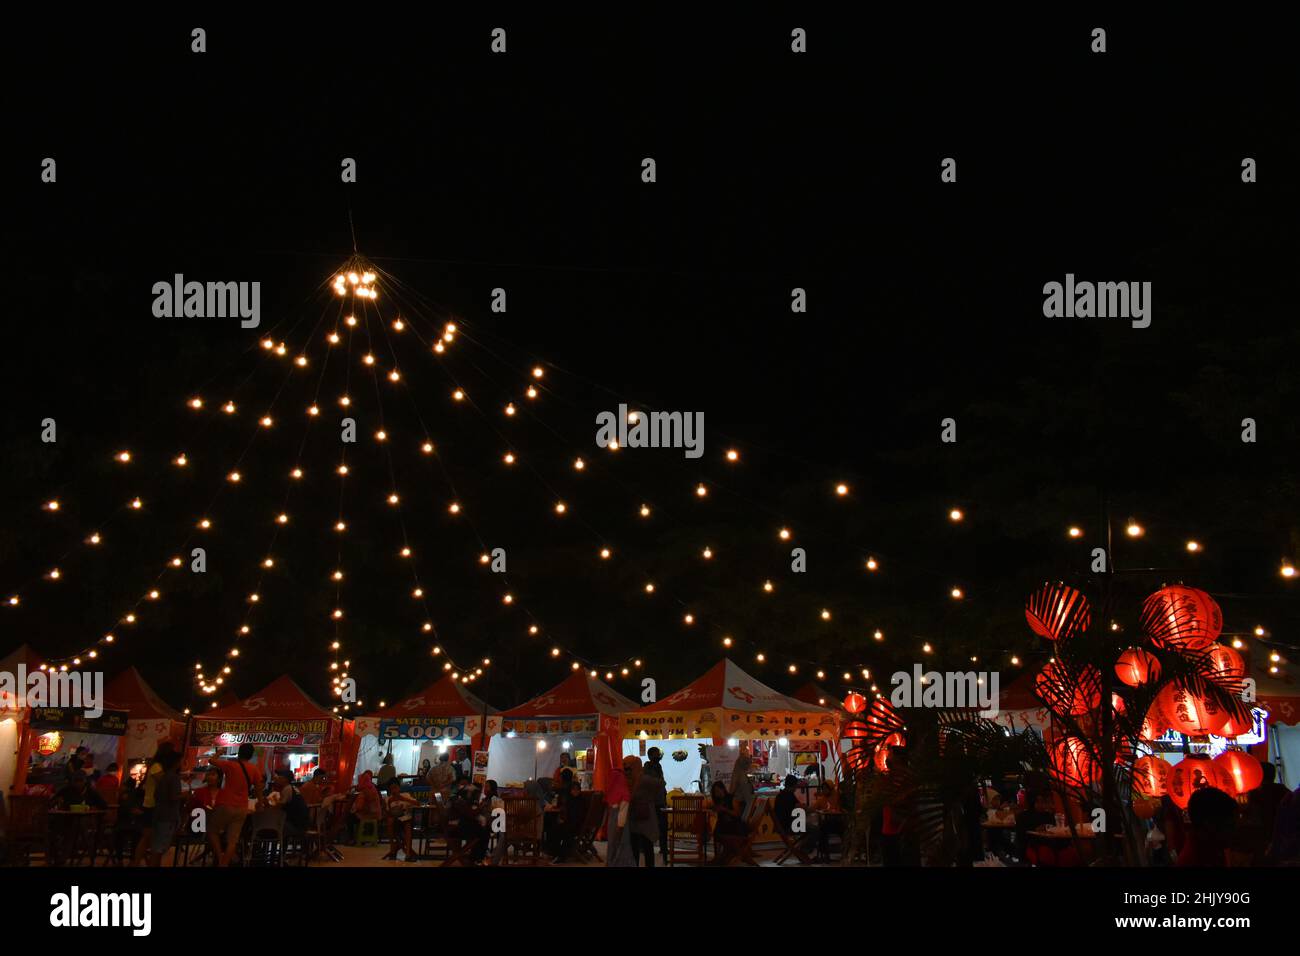 Laternen und Lichter Dekoration Anordnung außerhalb des Einkaufszentrums während des chinesischen Neujahrsfestes. Surakarta, Indonesien. Stockfoto